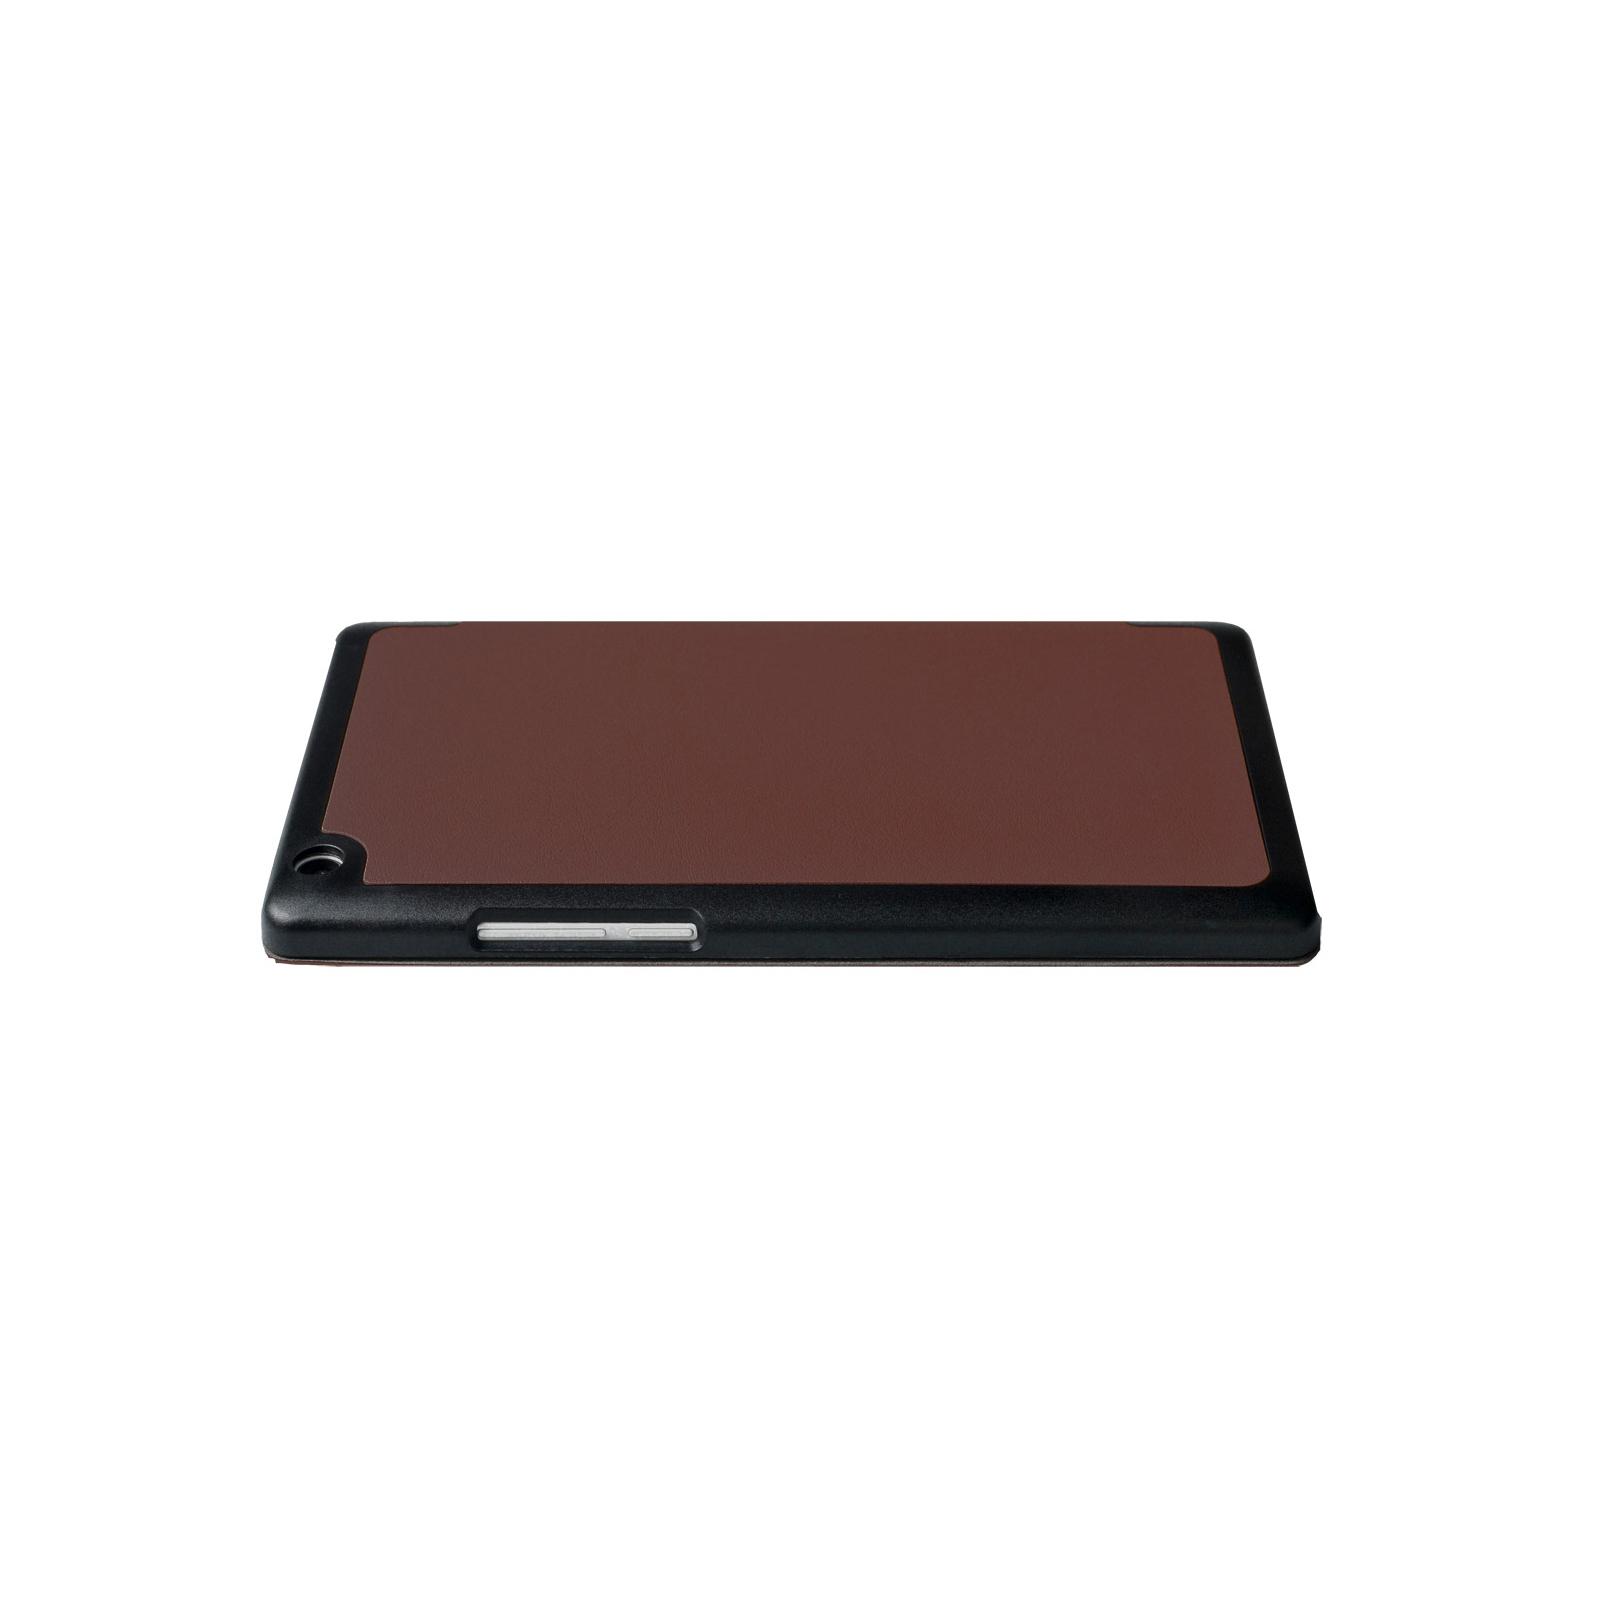 Чохол до планшета Grand-X для Lenovo Tab 3 710F Brown (LTC - LT3710FBR) зображення 3